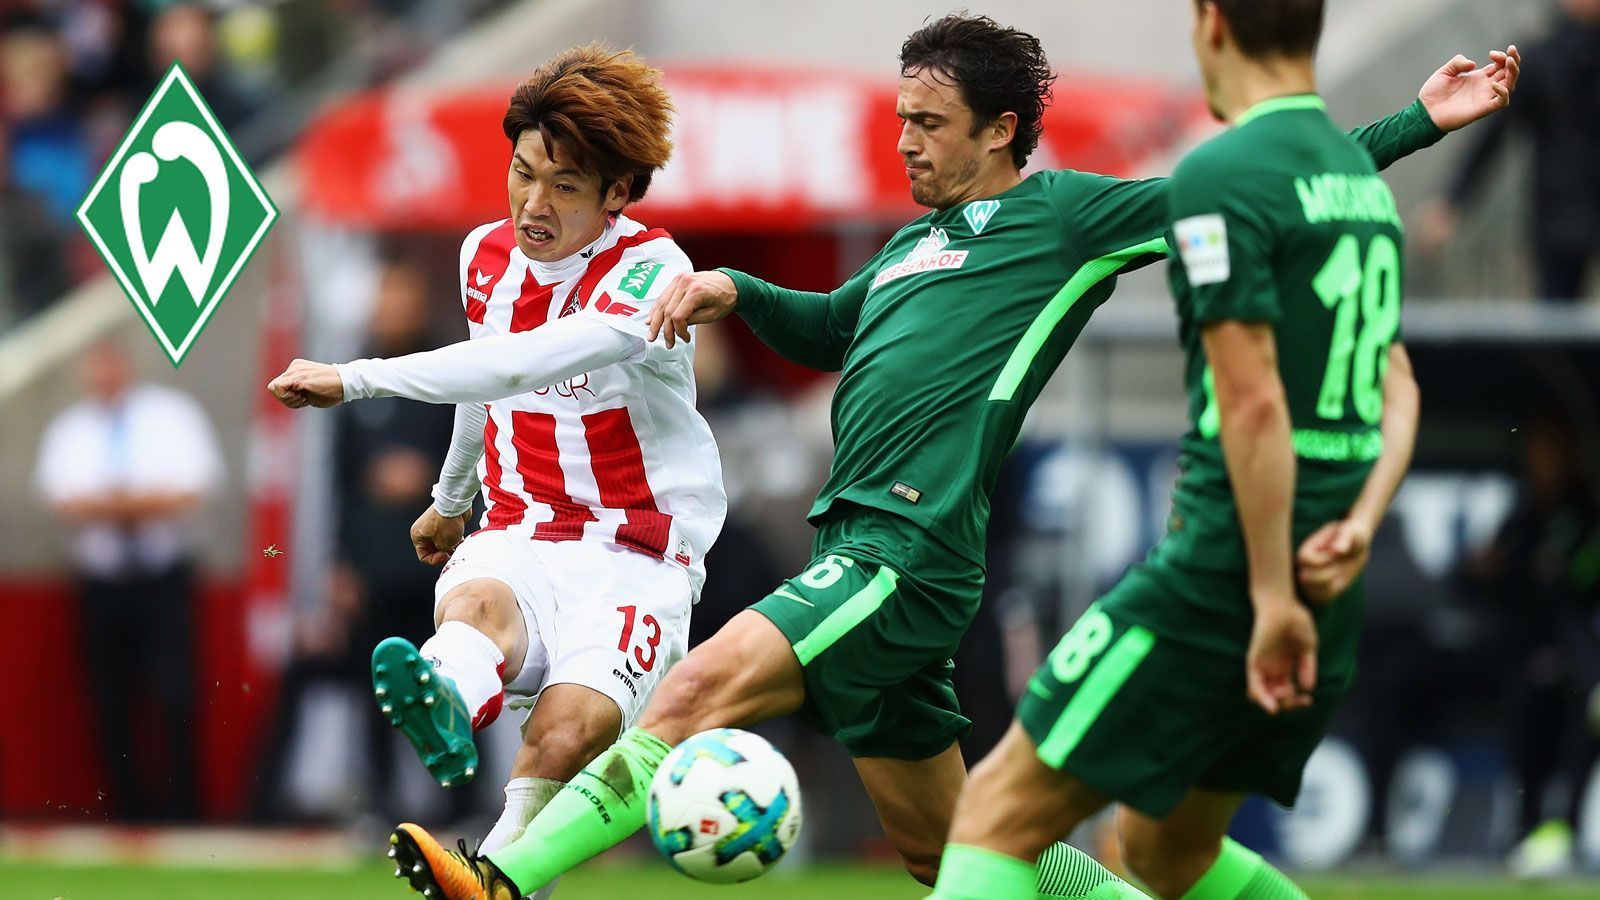 
                <strong>Yuya Osako (Zugang Werder Bremen)</strong><br>
                Yuya Osako wird künftig für Werder Bremen auf Torejagd gehen. Der Japaner kommt vom 1. FC Köln und kostet die Hanseaten zwischen viereinhalb und sechs Millionen Euro. Der 27-Jährige unterschreibt wohl einen Vertrag bis 2022. Die Grün-Weißen schnappen Osako damit ausgerechnet dem Nordrivalen Hannover 96 vor der Nase weg, der bereits Verhandlungen mit dem Japaner geführt hatte.
              